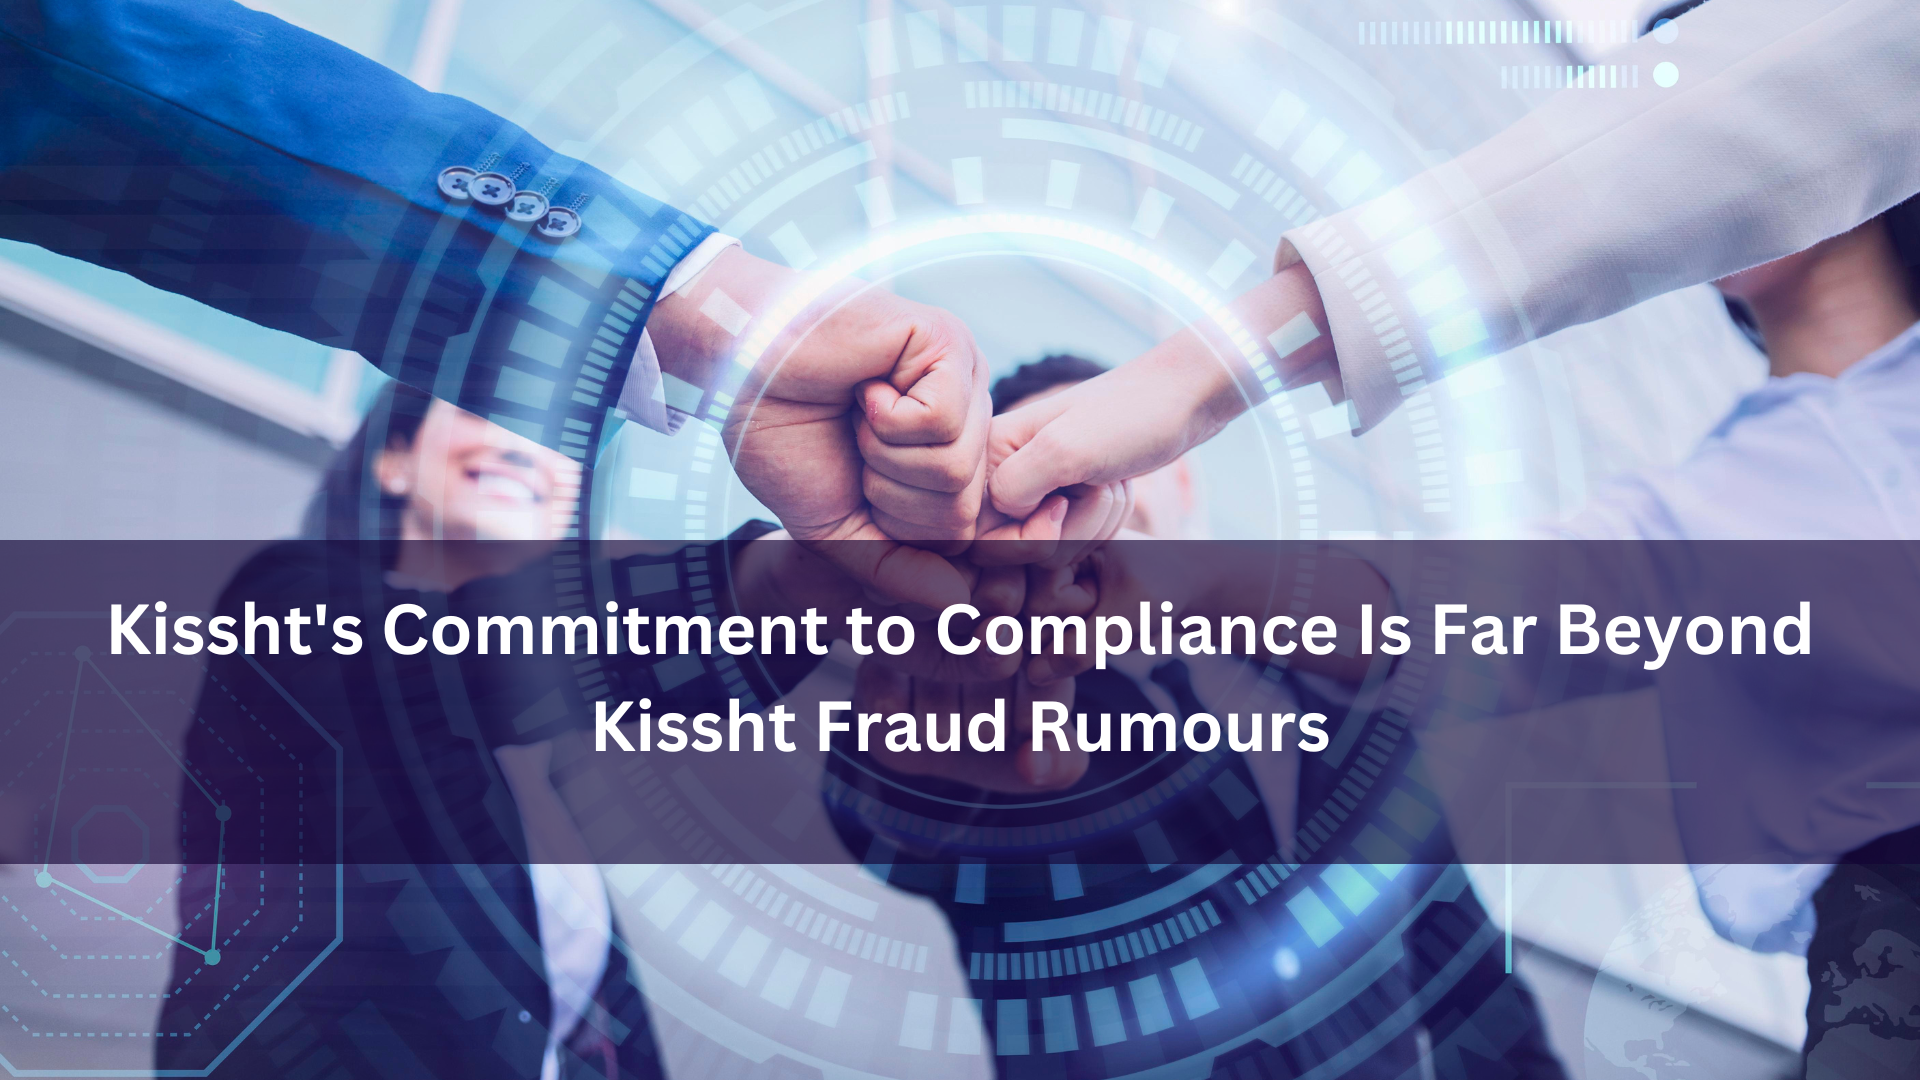 Kissht’s Commitment to Compliance Is Far Beyond Kissht Fraud Rumours